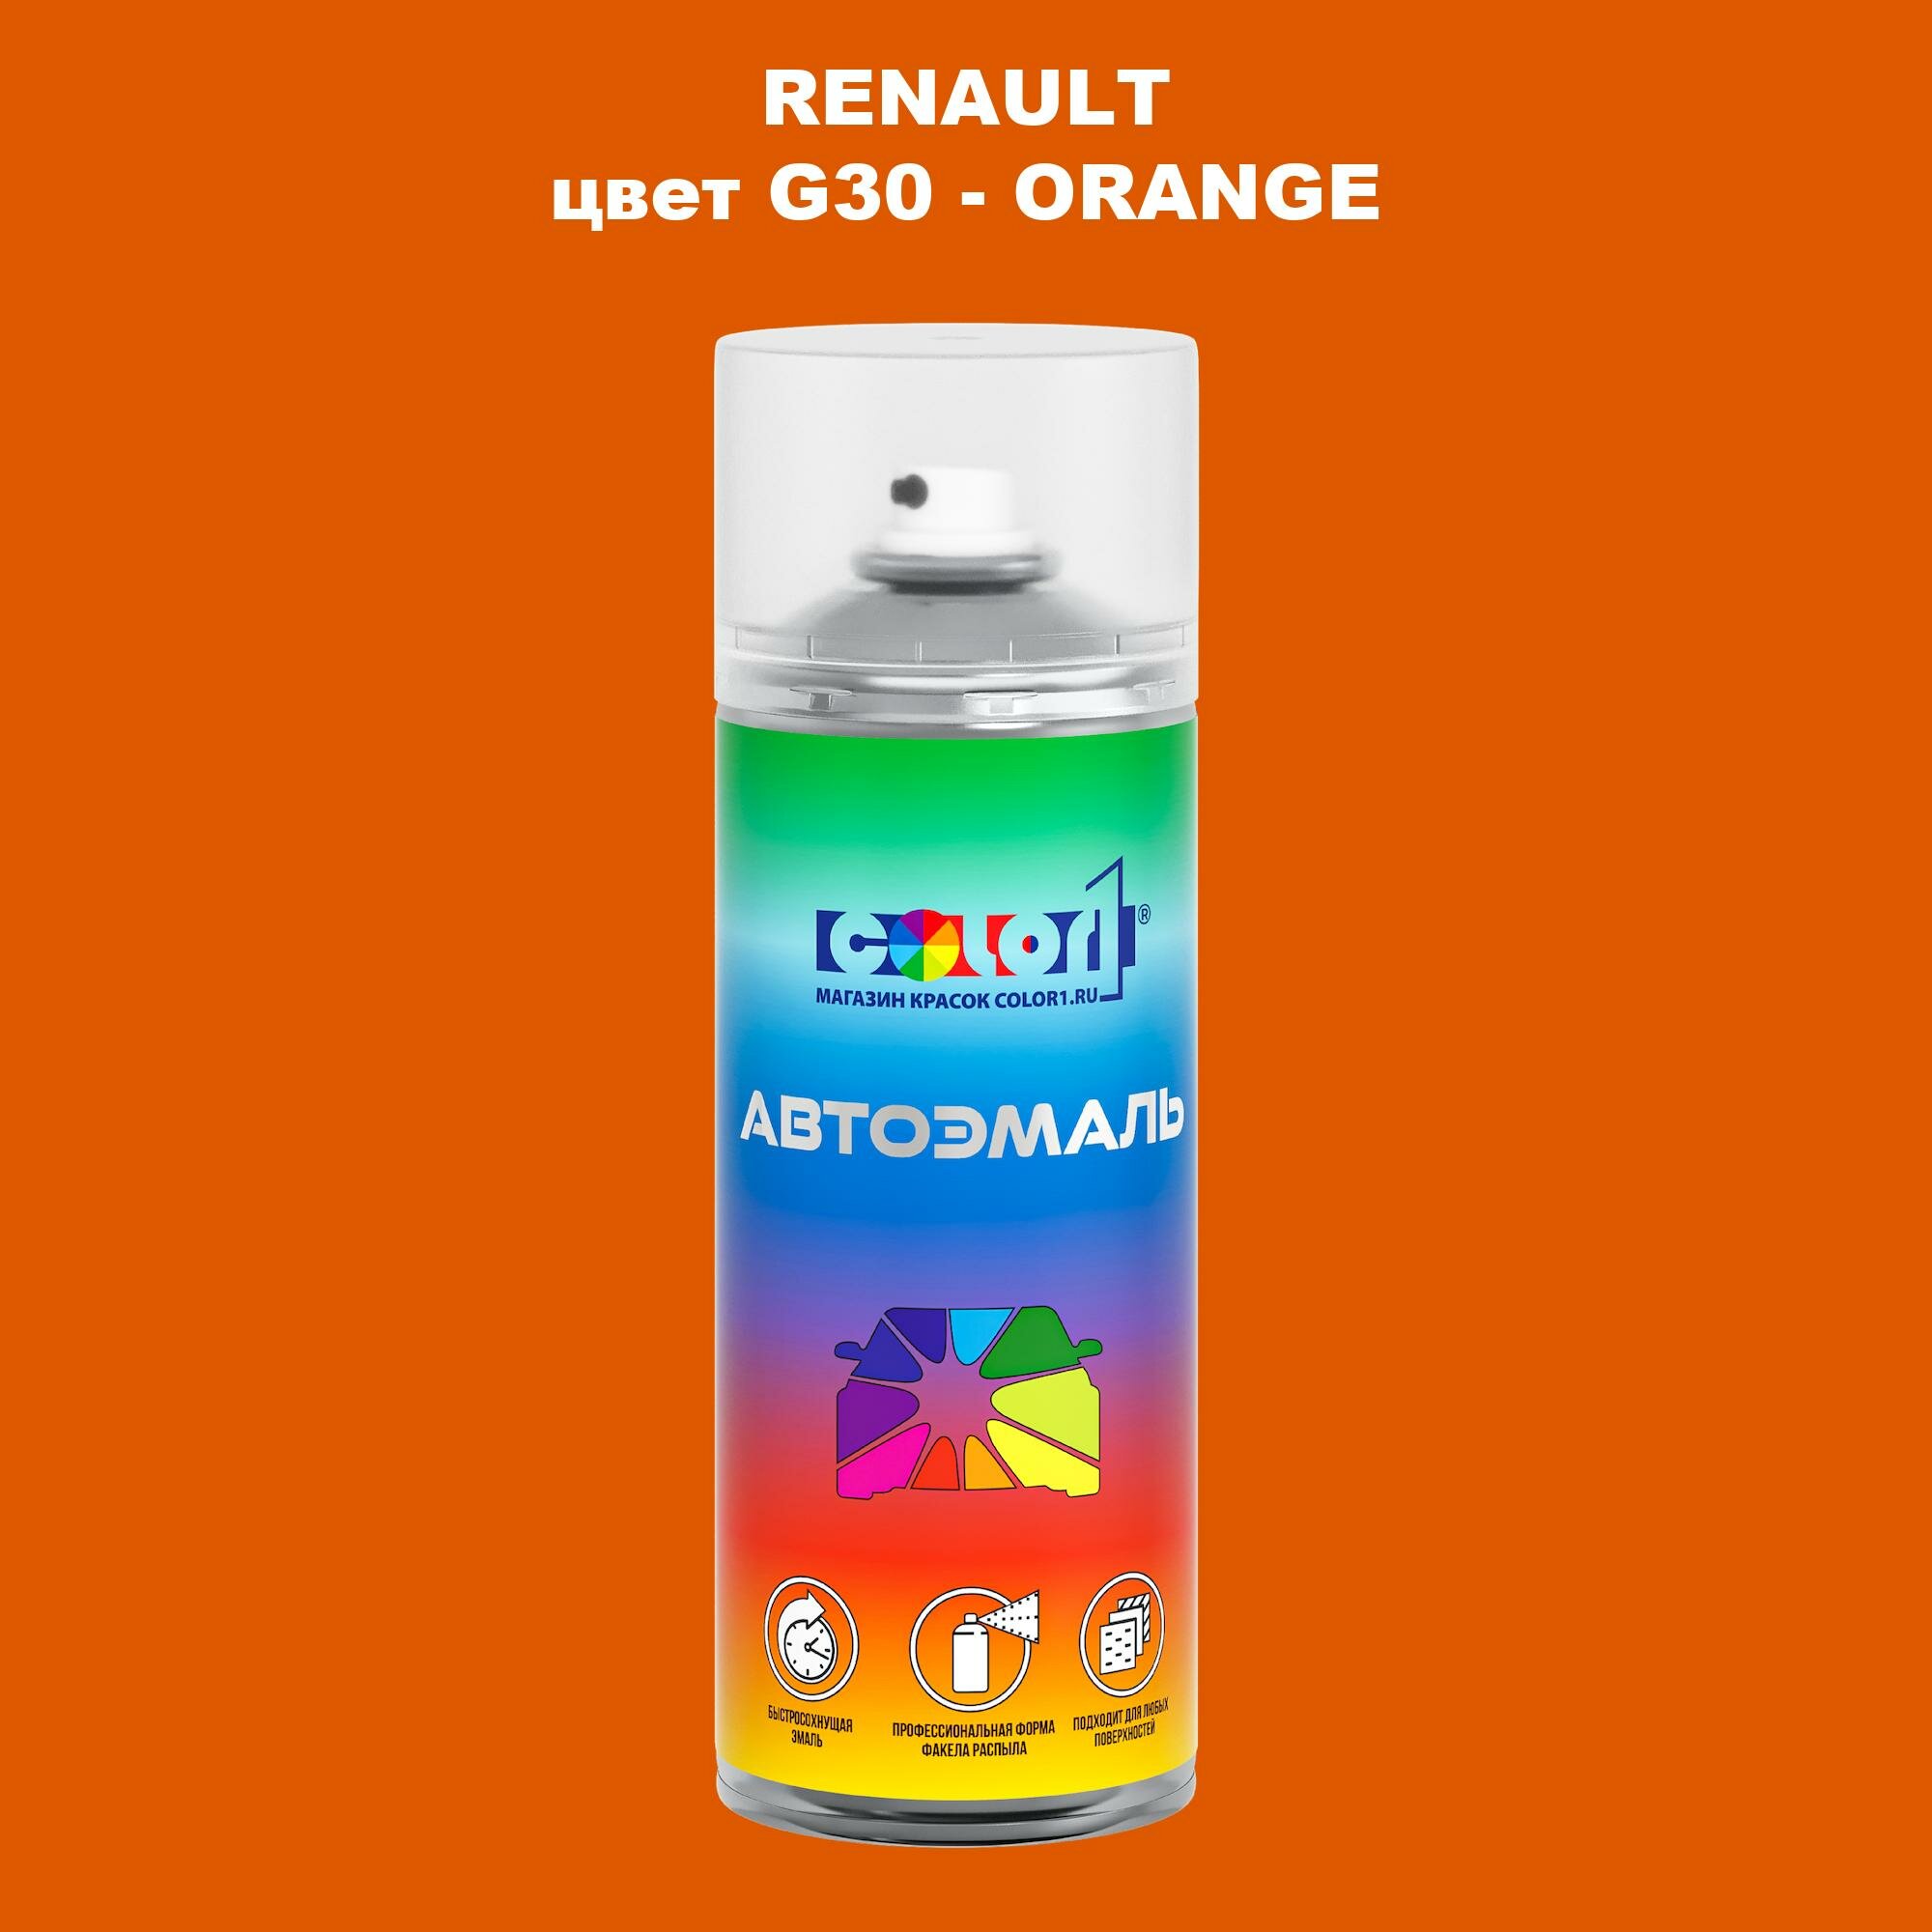 Аэрозольная краска COLOR1 для RENAULT, цвет G30 - ORANGE